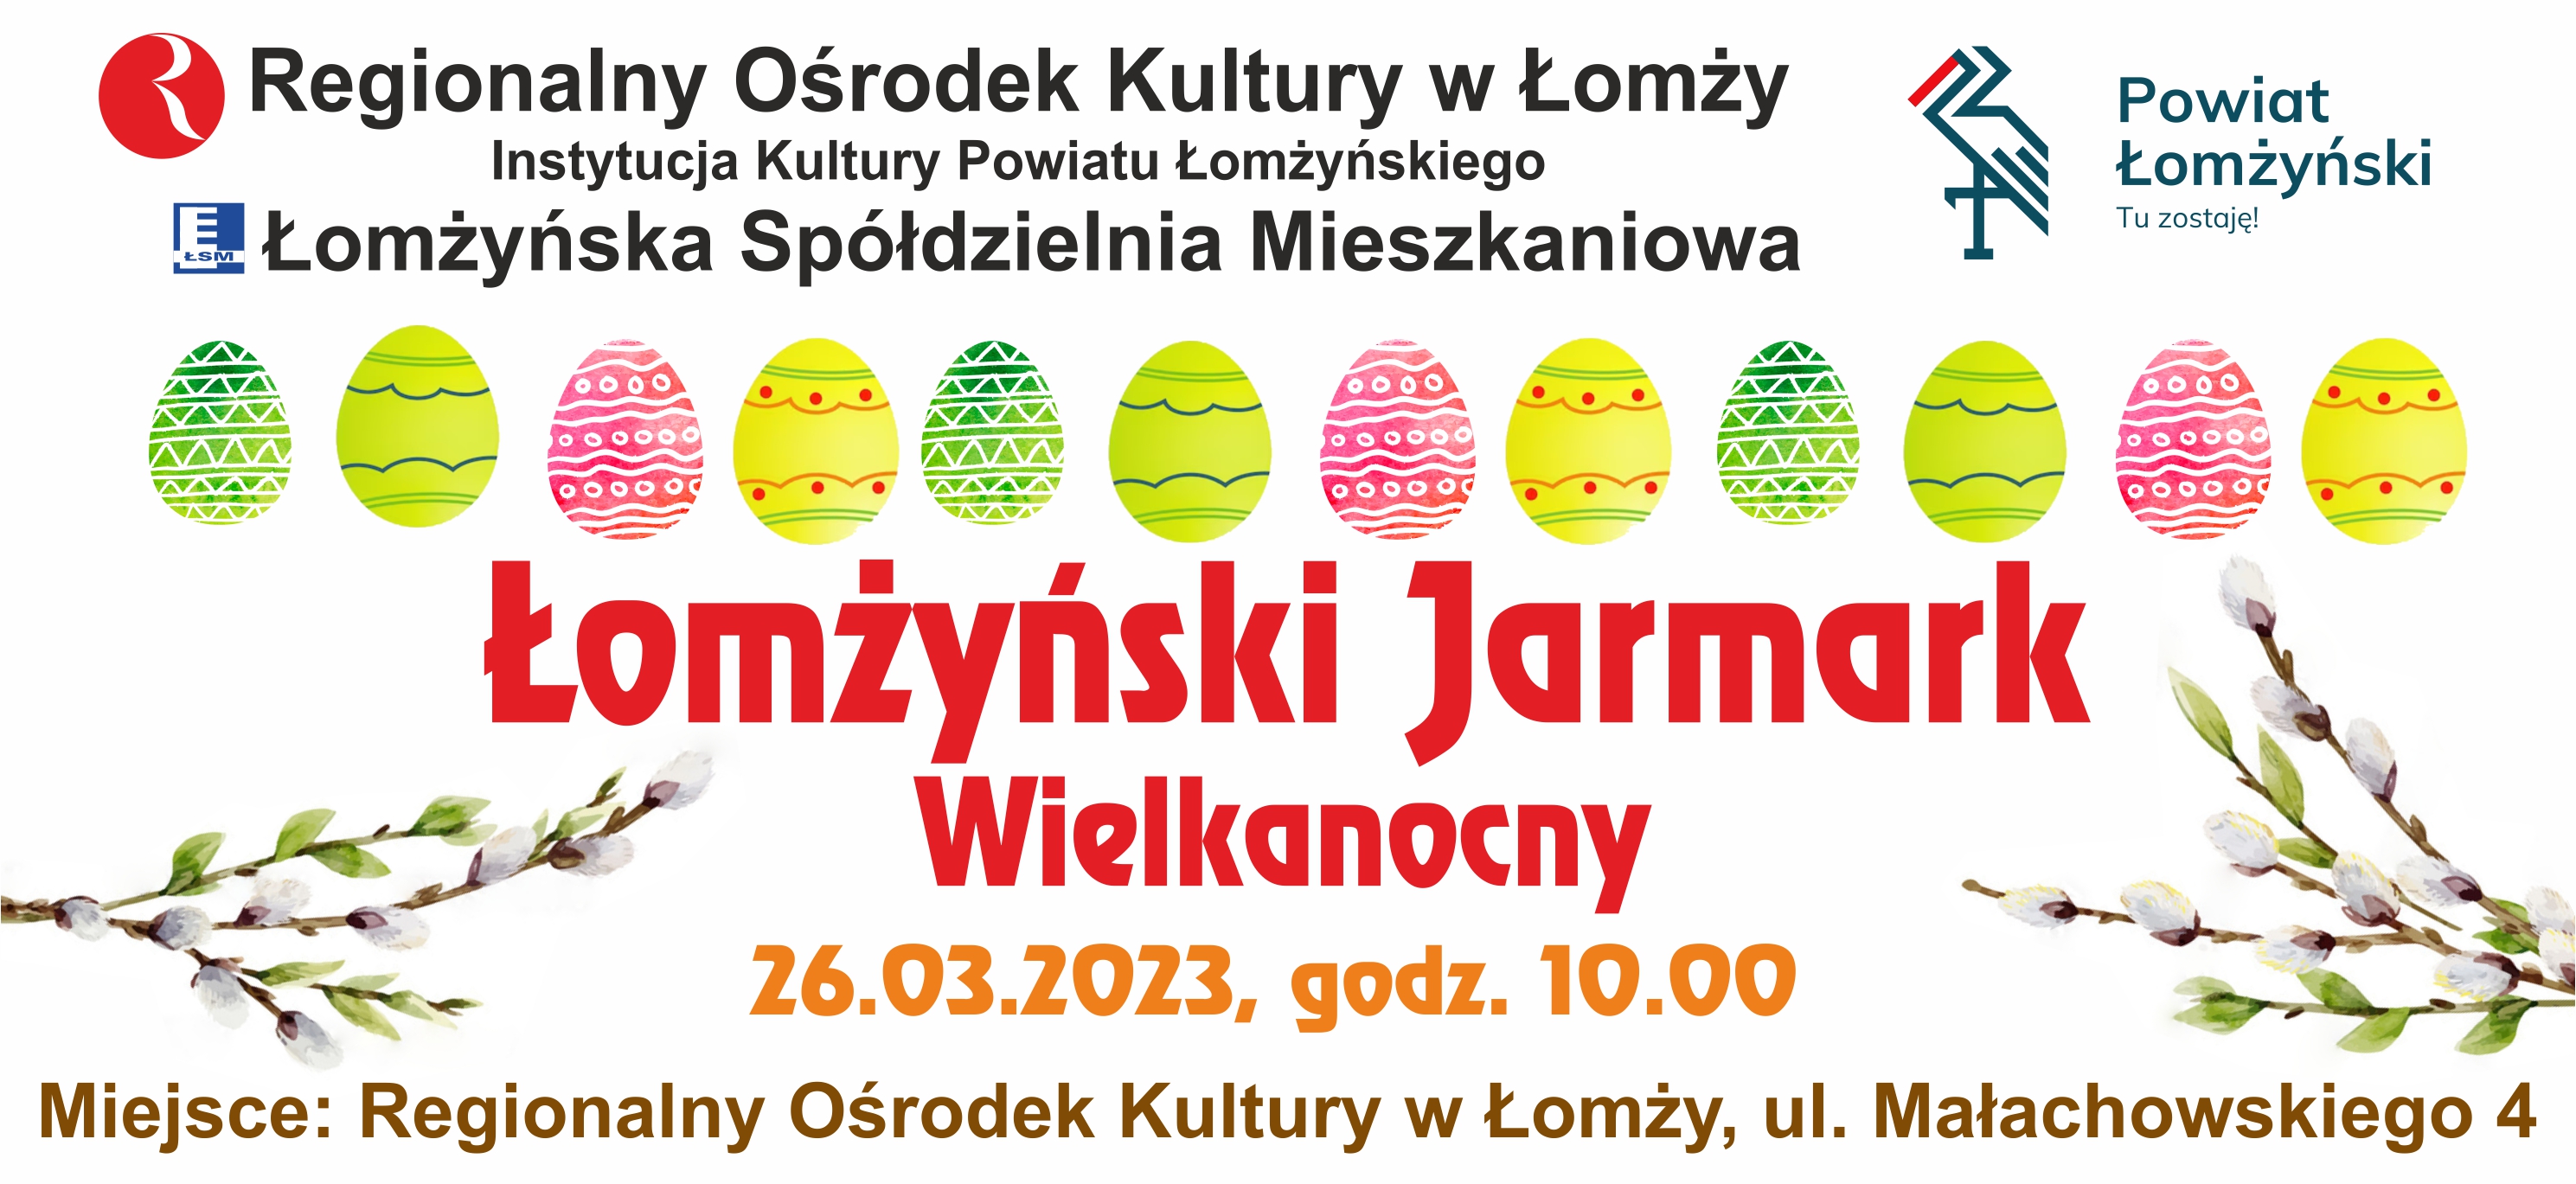 17.03.2023 Łomżyński Jarmark Wielkanocny – Targi Twórczości Artystycznej 2023